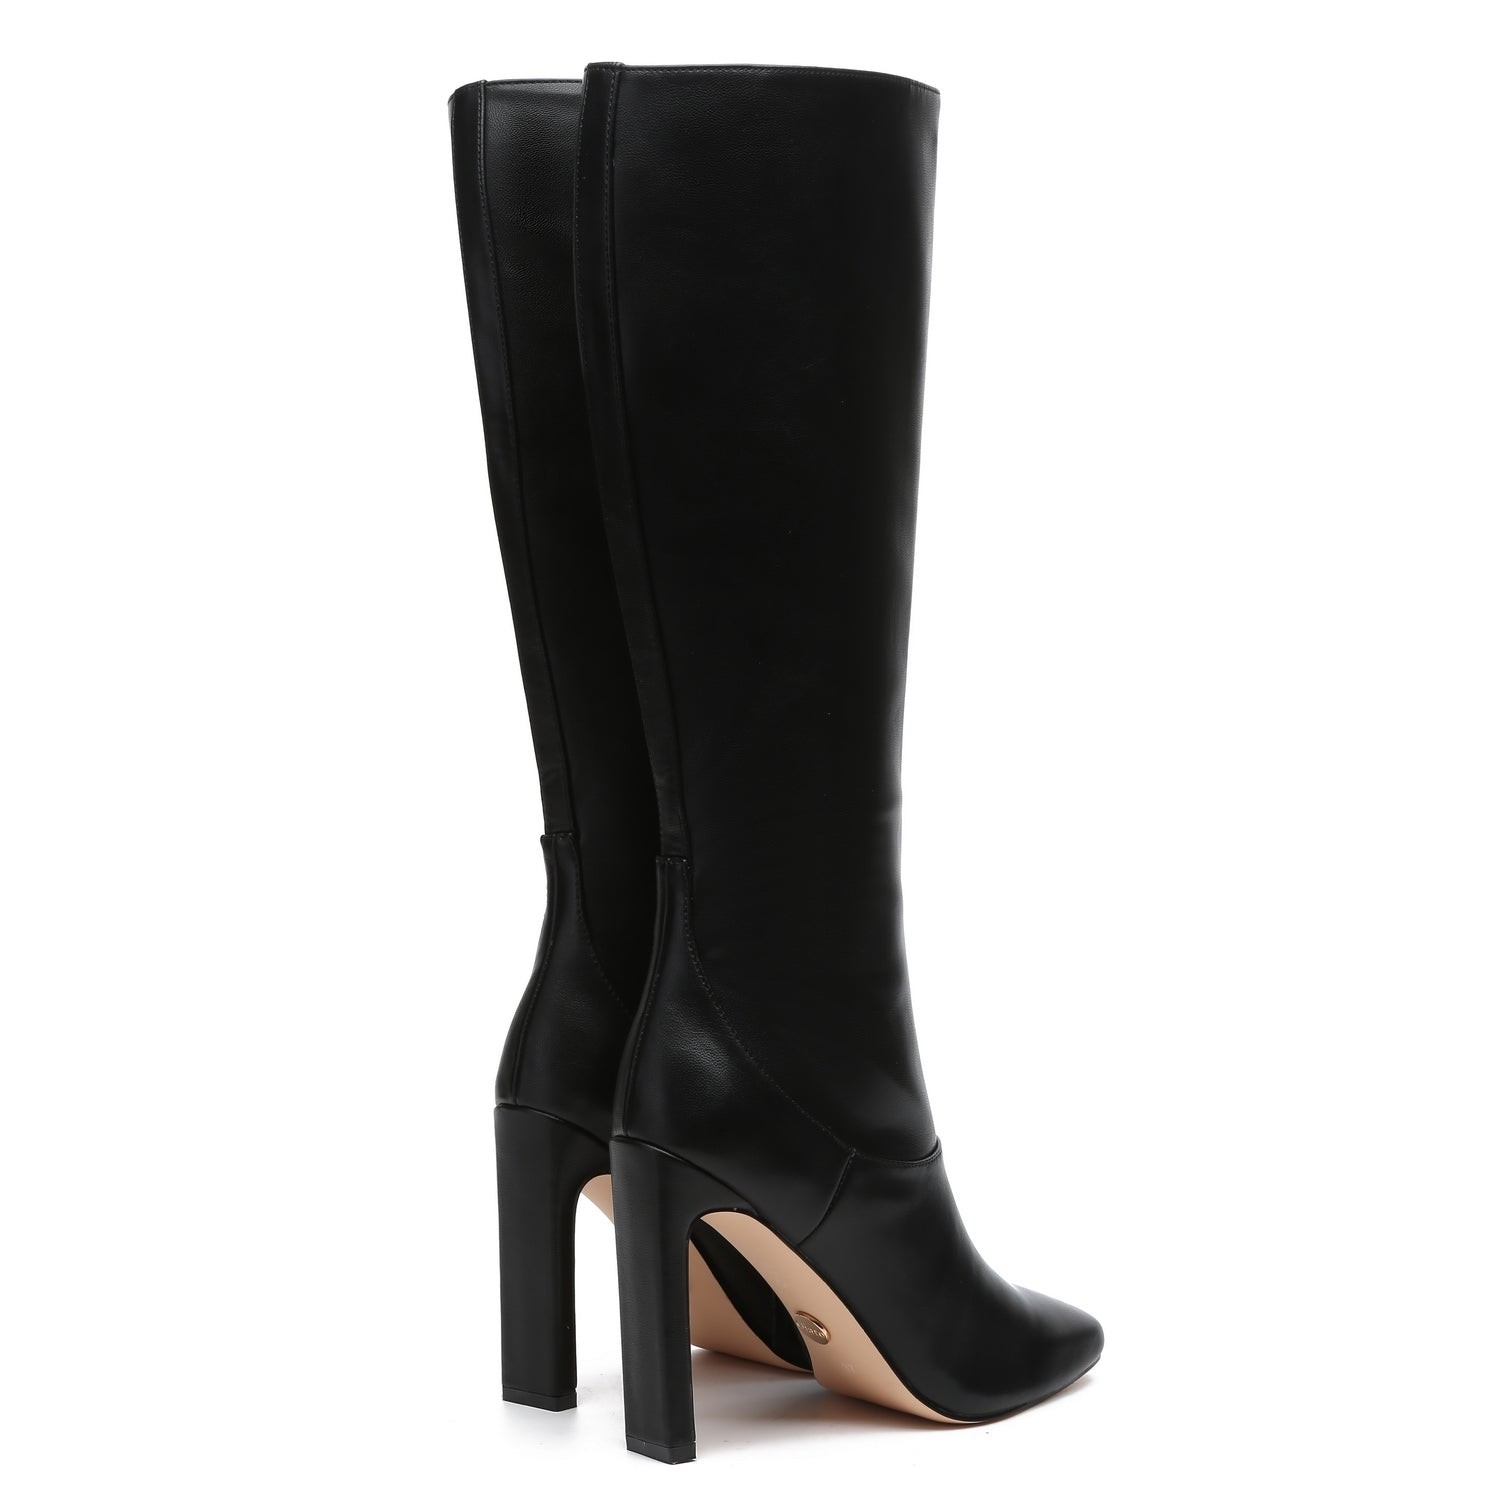 Celine Heel Boots black elegant Shoes High Boots Heel Boots 